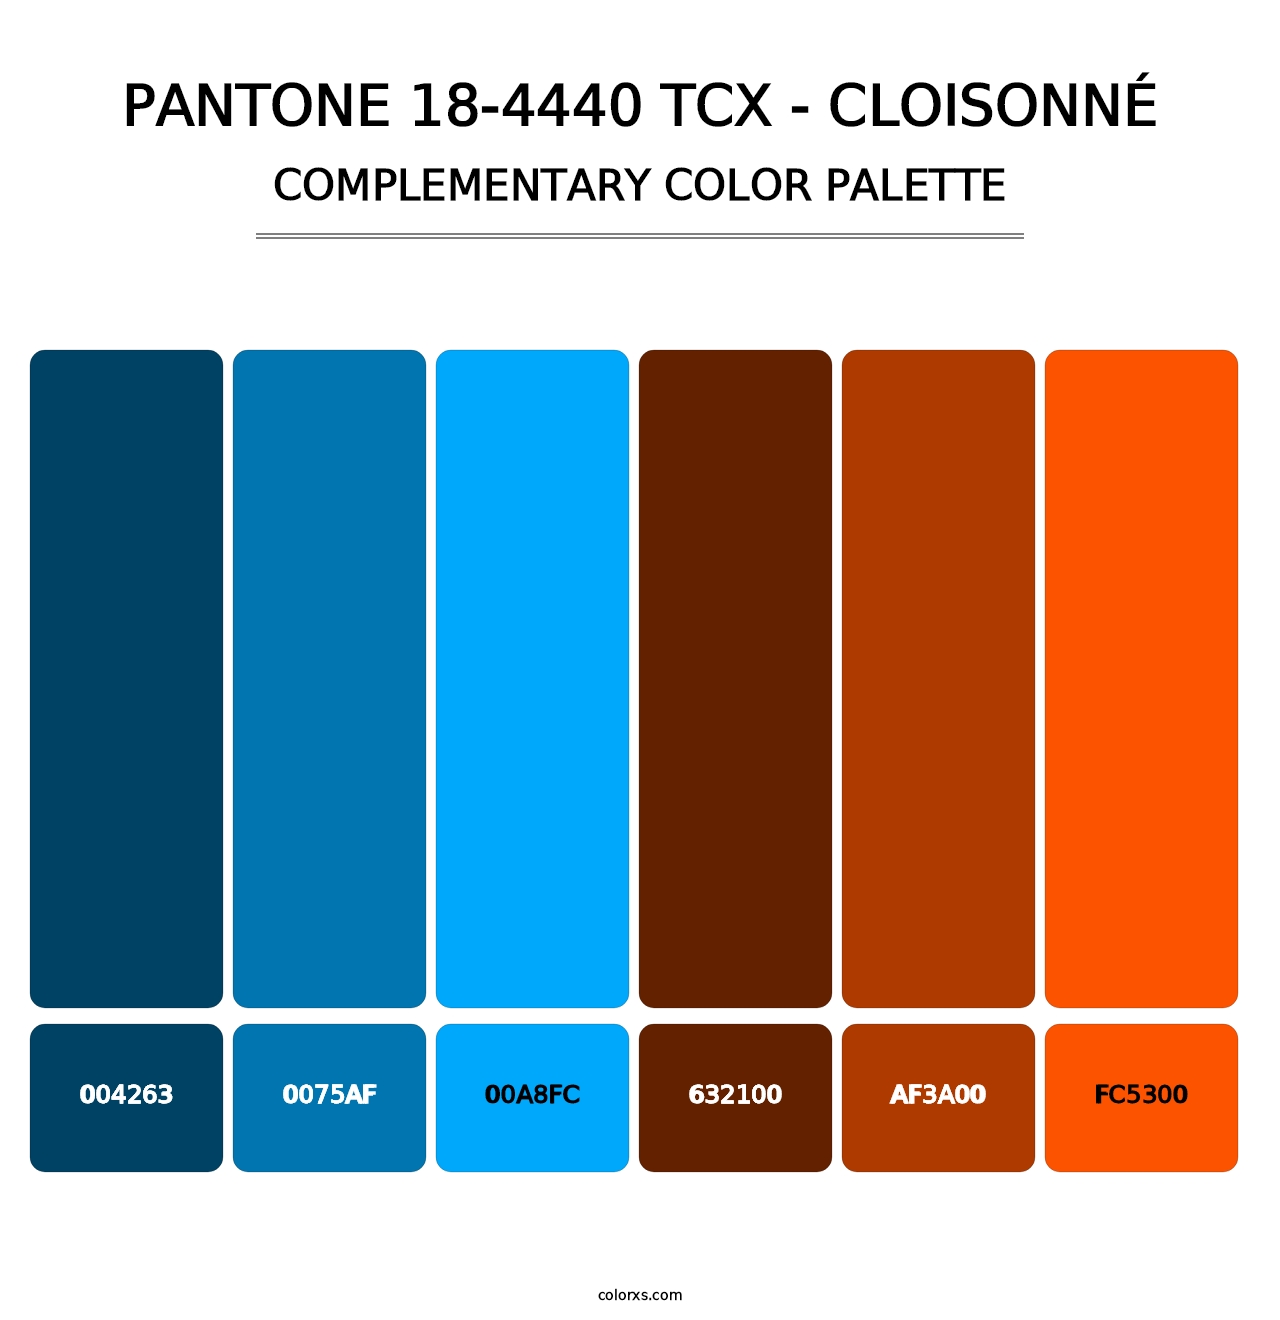 PANTONE 18-4440 TCX - Cloisonné - Complementary Color Palette